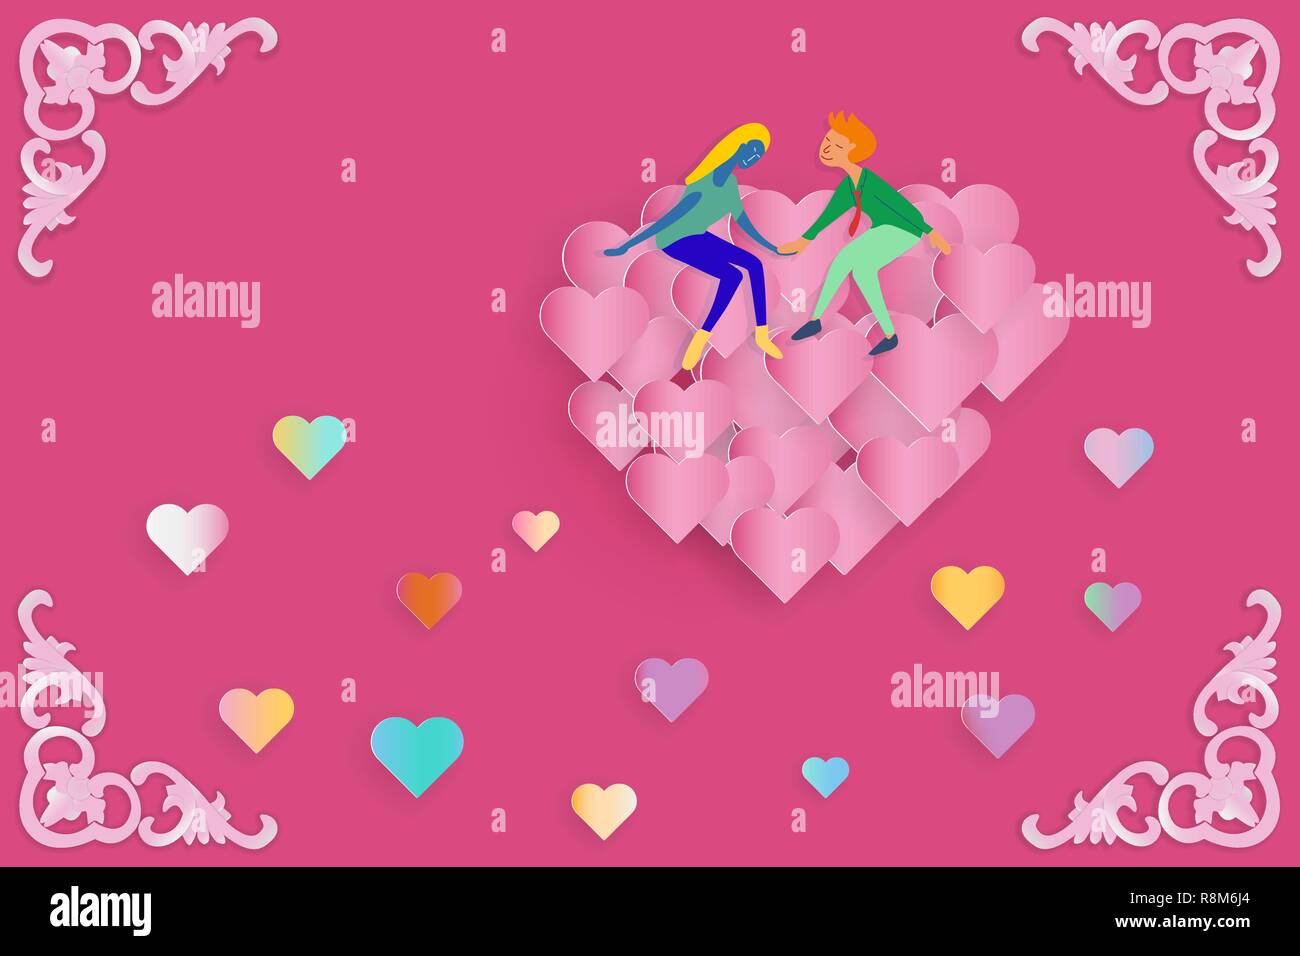 Illustrazione di amante seduta sul gruppo di galleggiamento del cuore rosso palloncino con piccolo cuore scatter su sfondo rosa. carta stile arte per san valentino concep Illustrazione Vettoriale